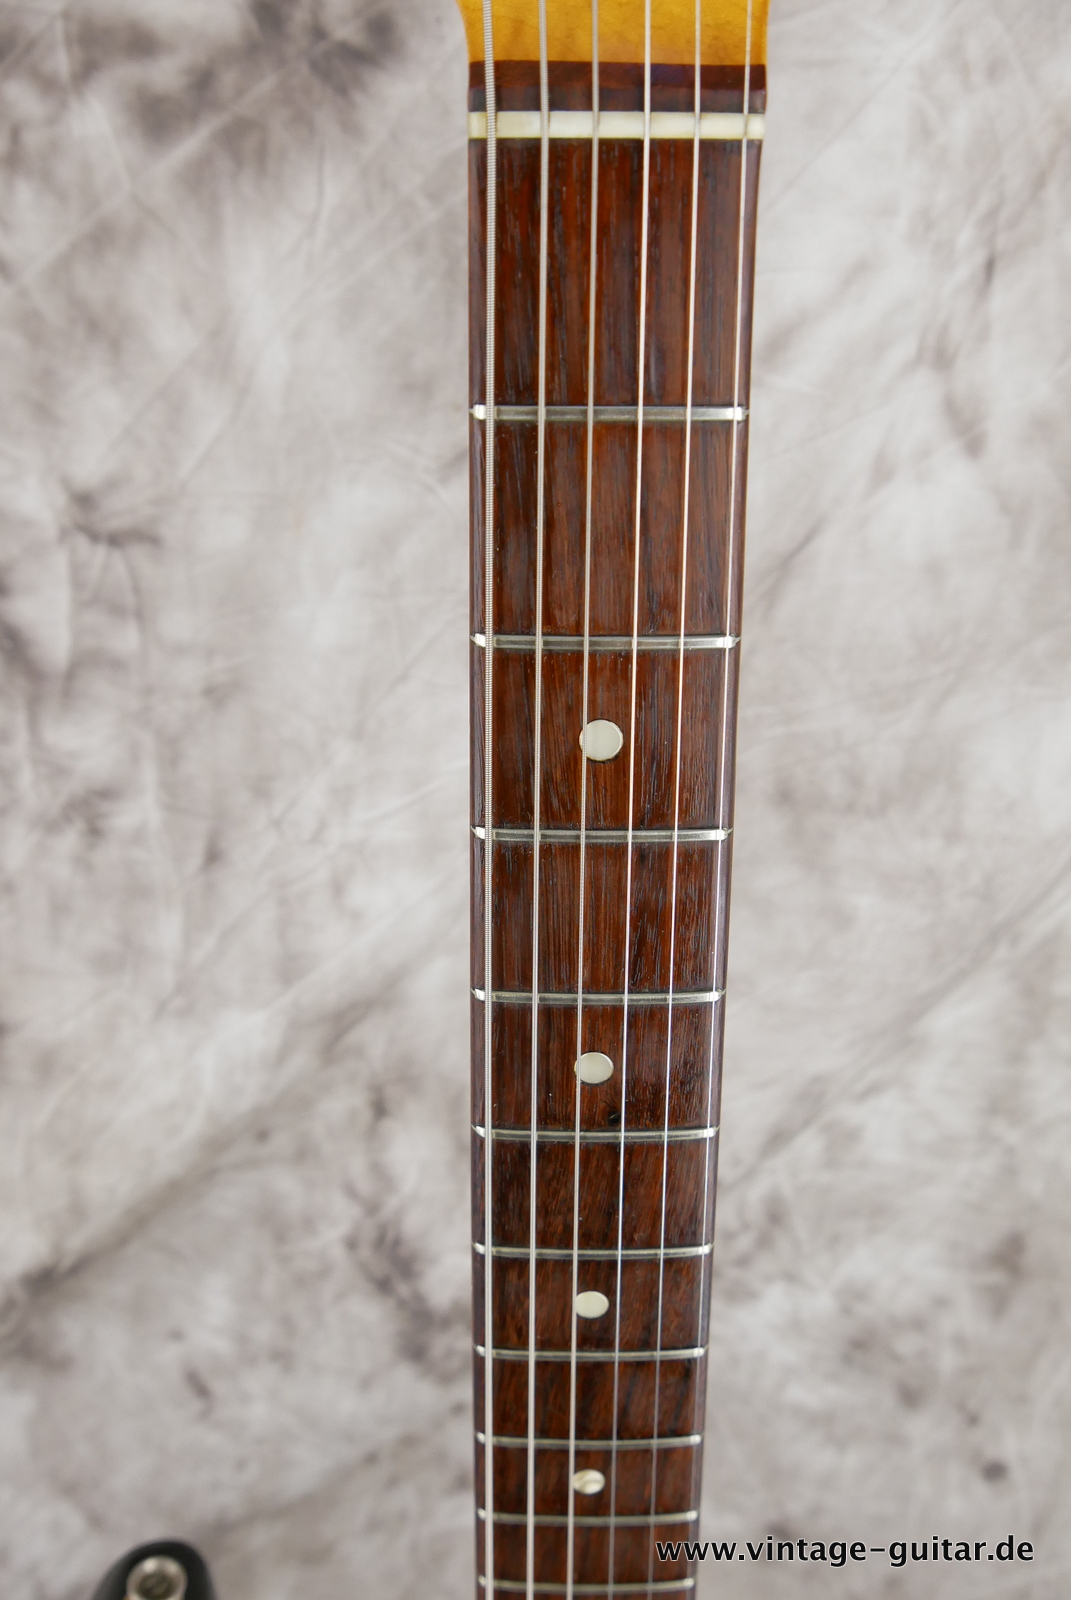 Fender-stratocaster-1969-black-007.JPG